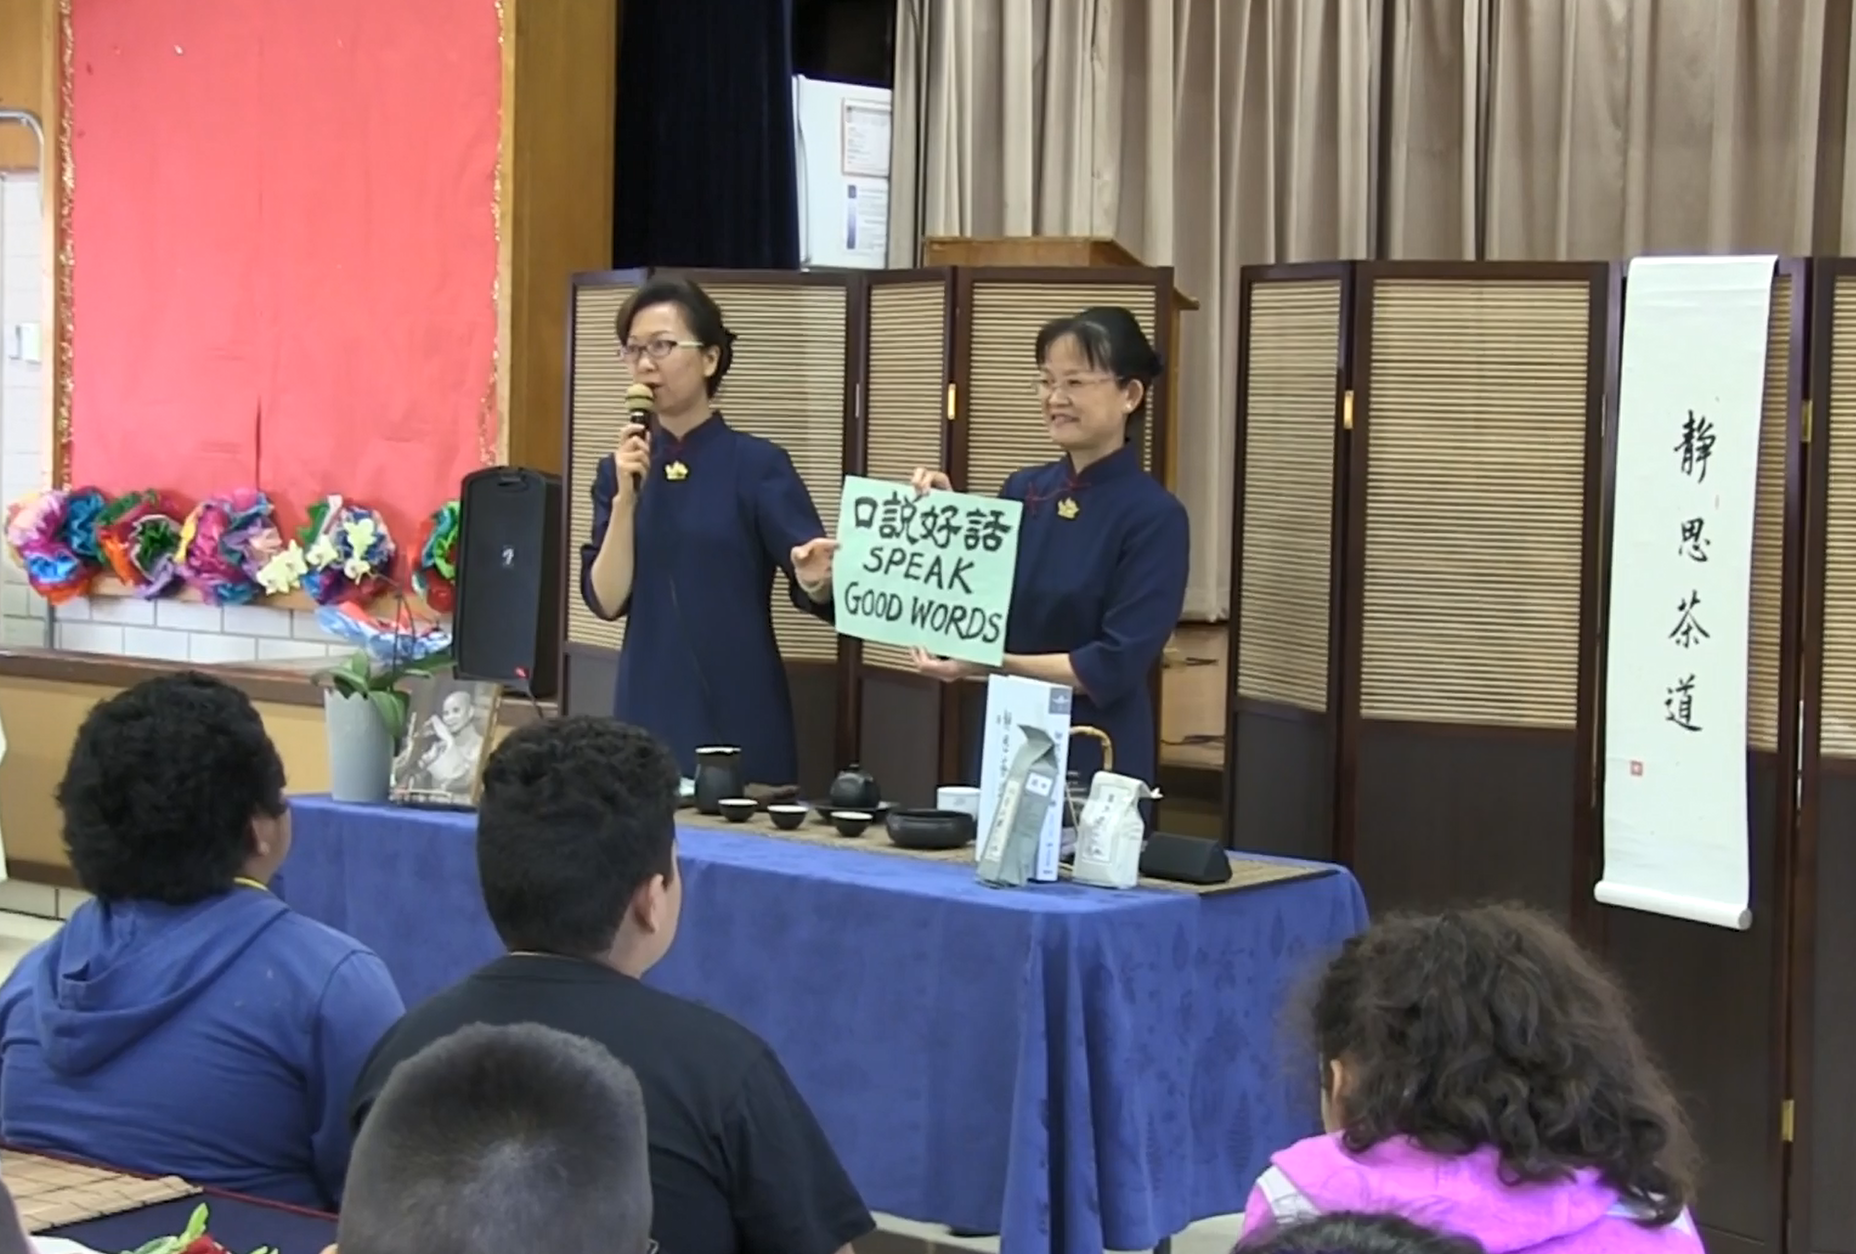 志工黃芳文（左）向學生說明，我們喝的是與眾不同的「三好茶」，每喝一次都對自己分別發願要「心發好願、口說好話、身行好事。」